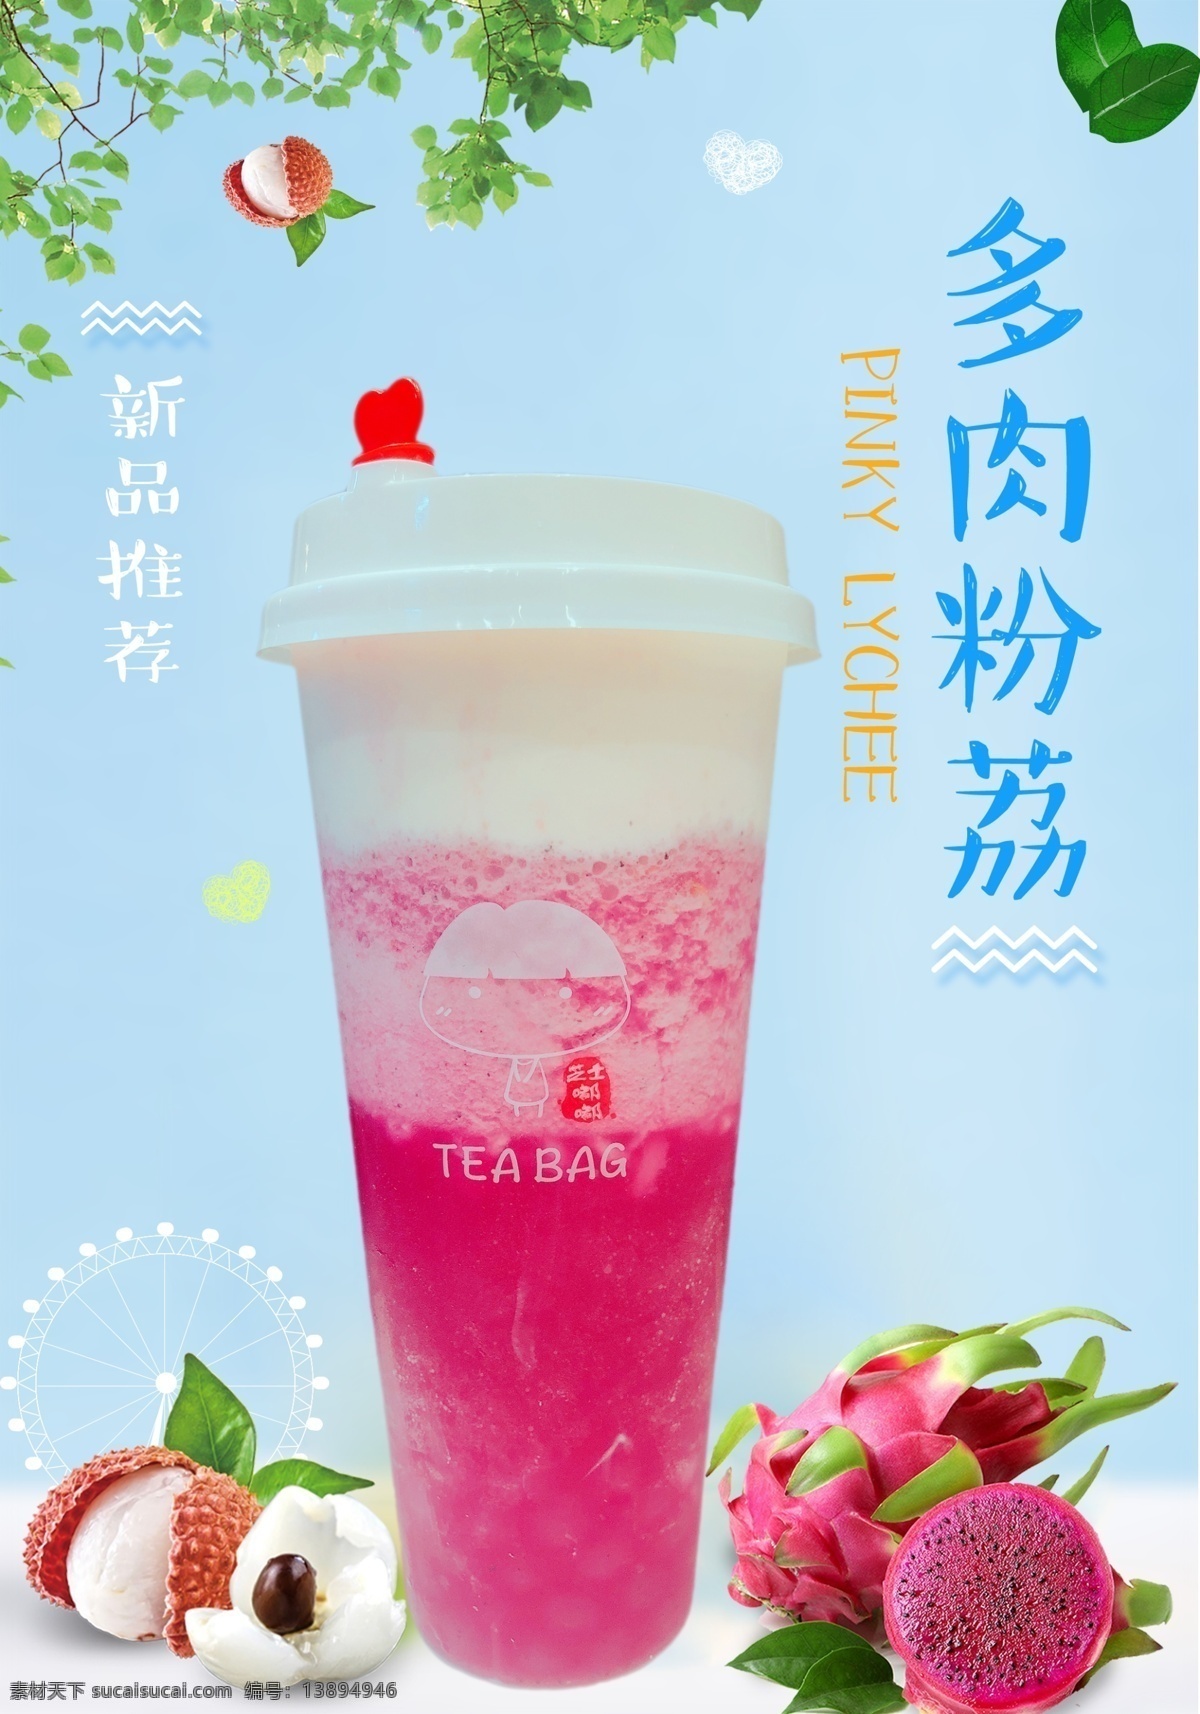 奶茶店海报 新品推荐 水果茶 多肉粉荔 荔枝 火龙果 奶茶